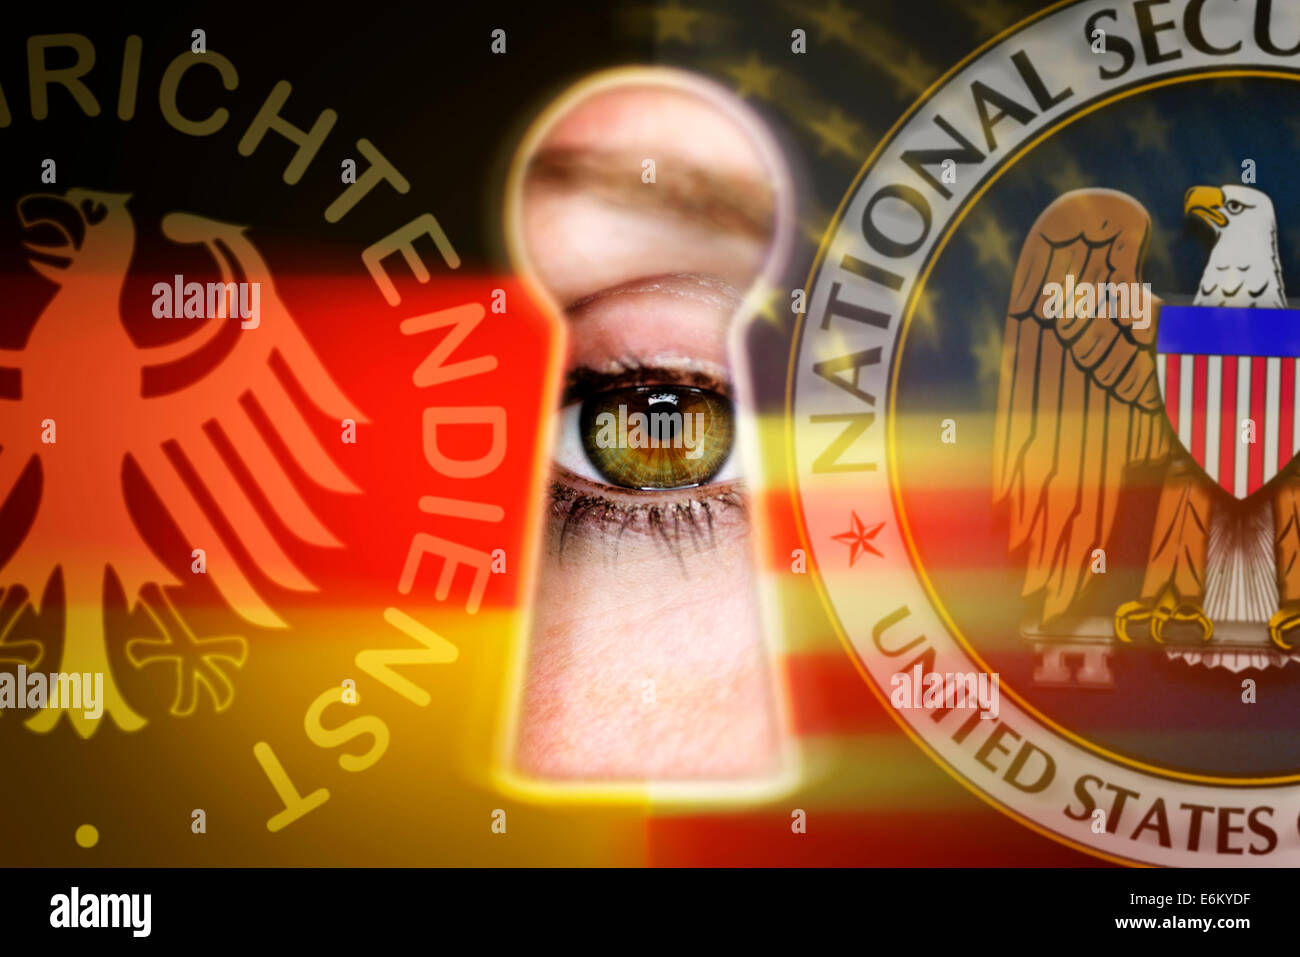 Auge blickt durch ein Schlüsselloch und simboli von BND und NSA, Spionageaffäre Foto Stock